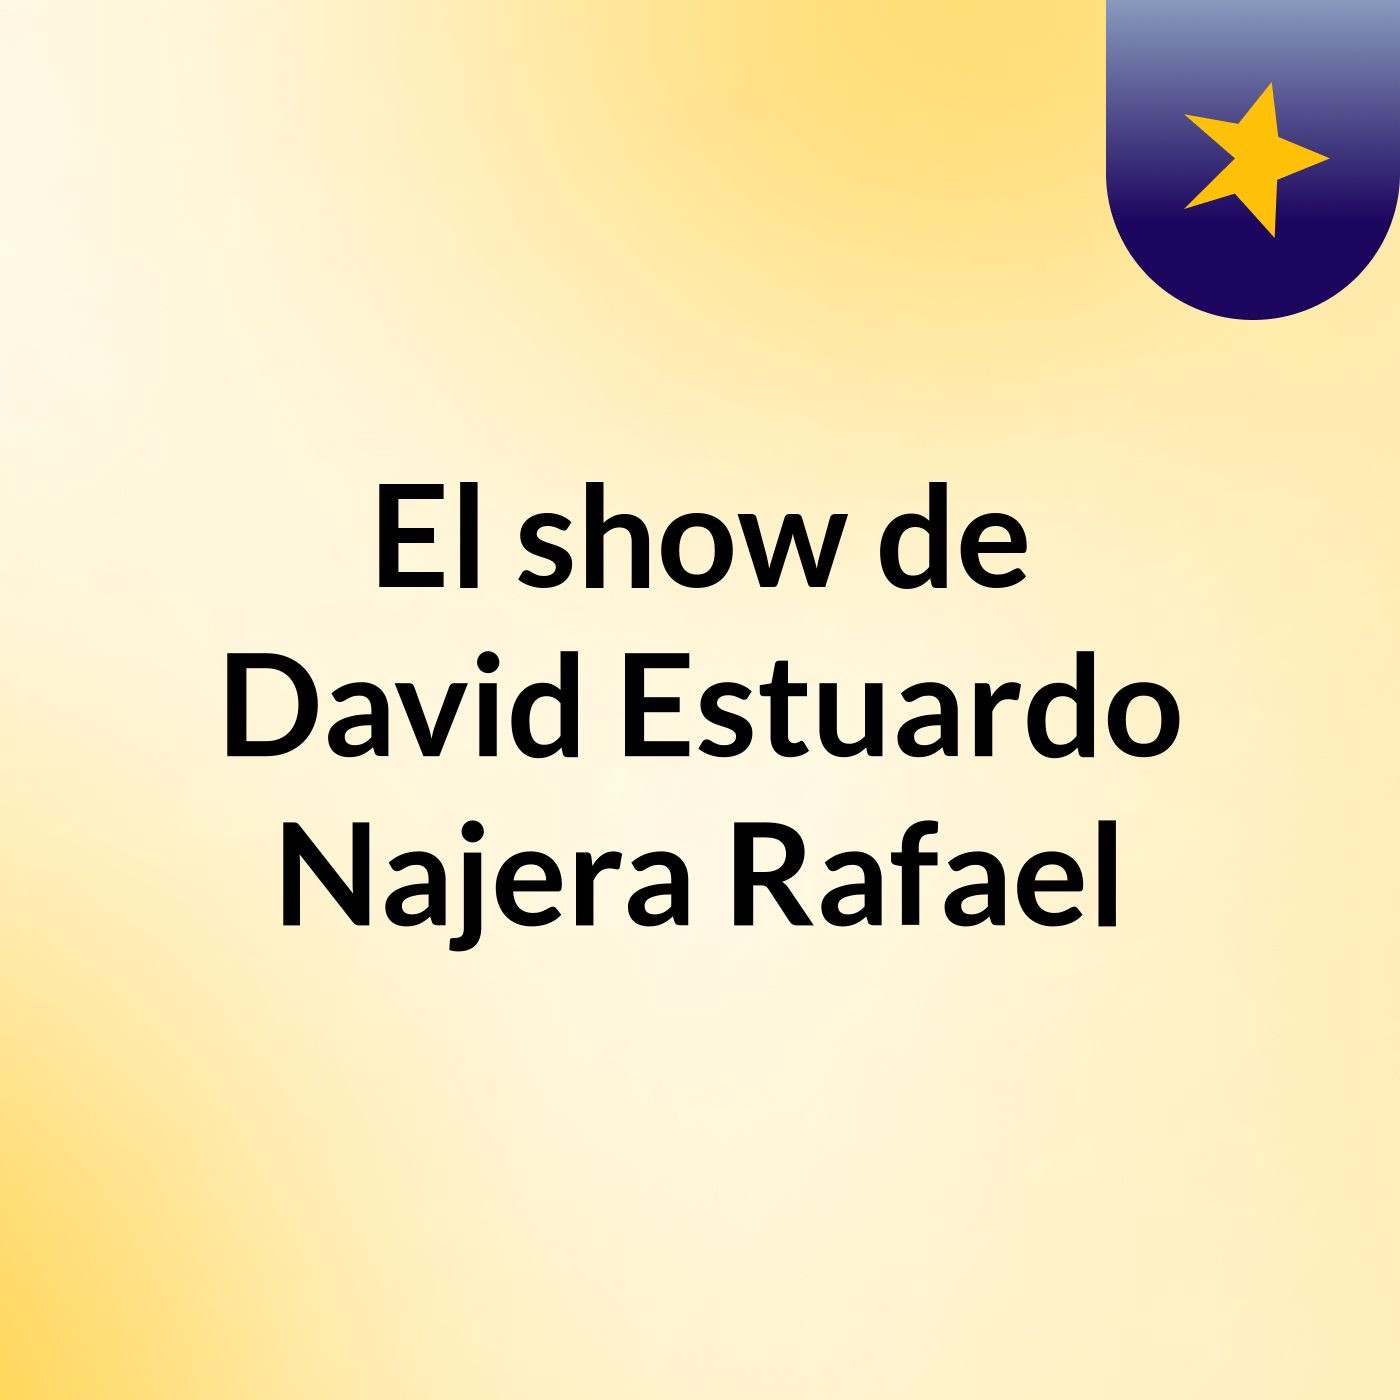 El show de David Estuardo Najera Rafael